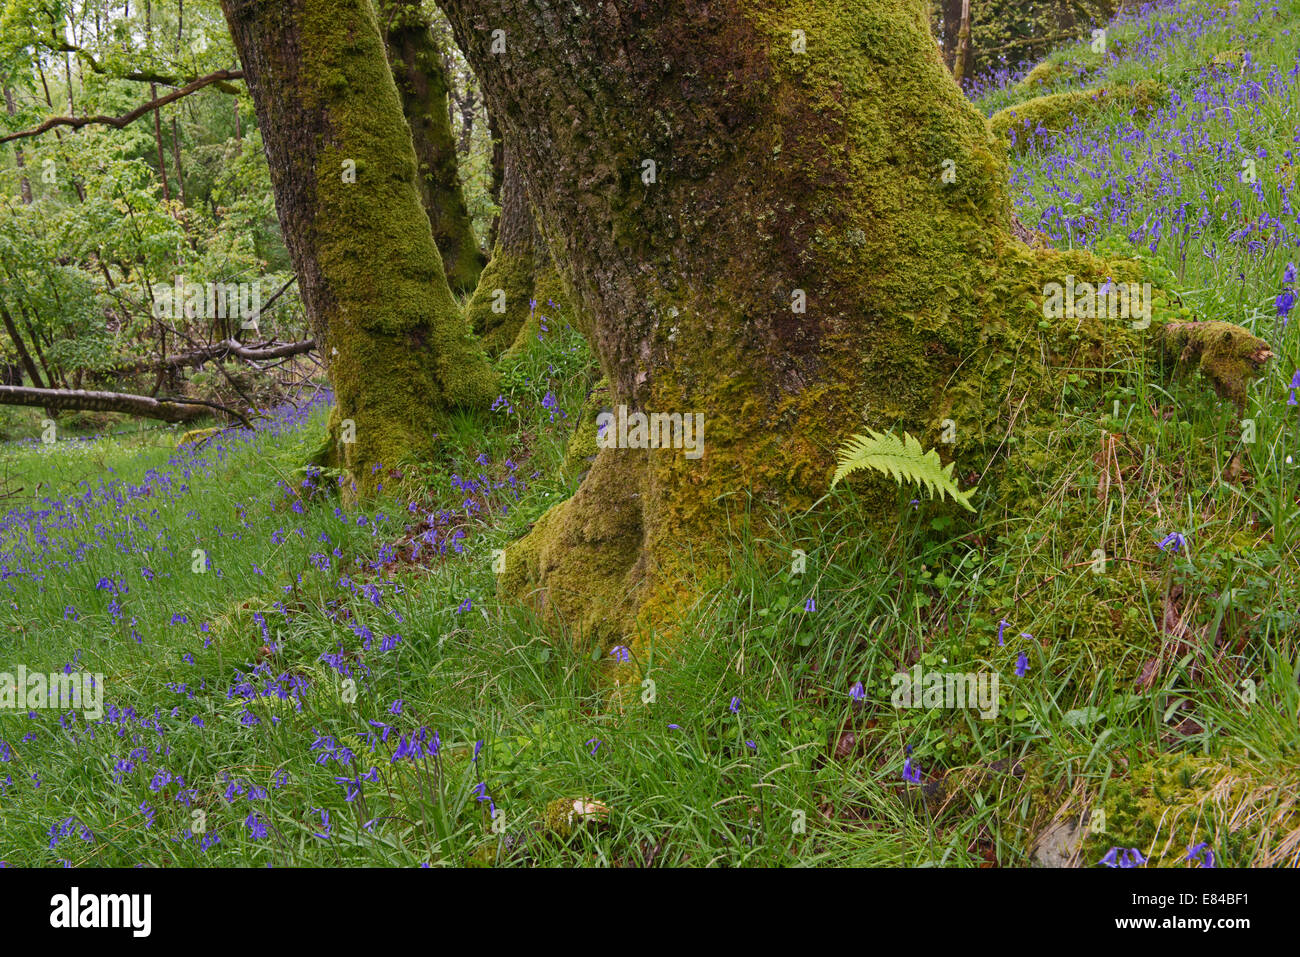 Jacinthes des bois en chêne sur les rives du Loch Lomond Ecosse Tayside peut Banque D'Images